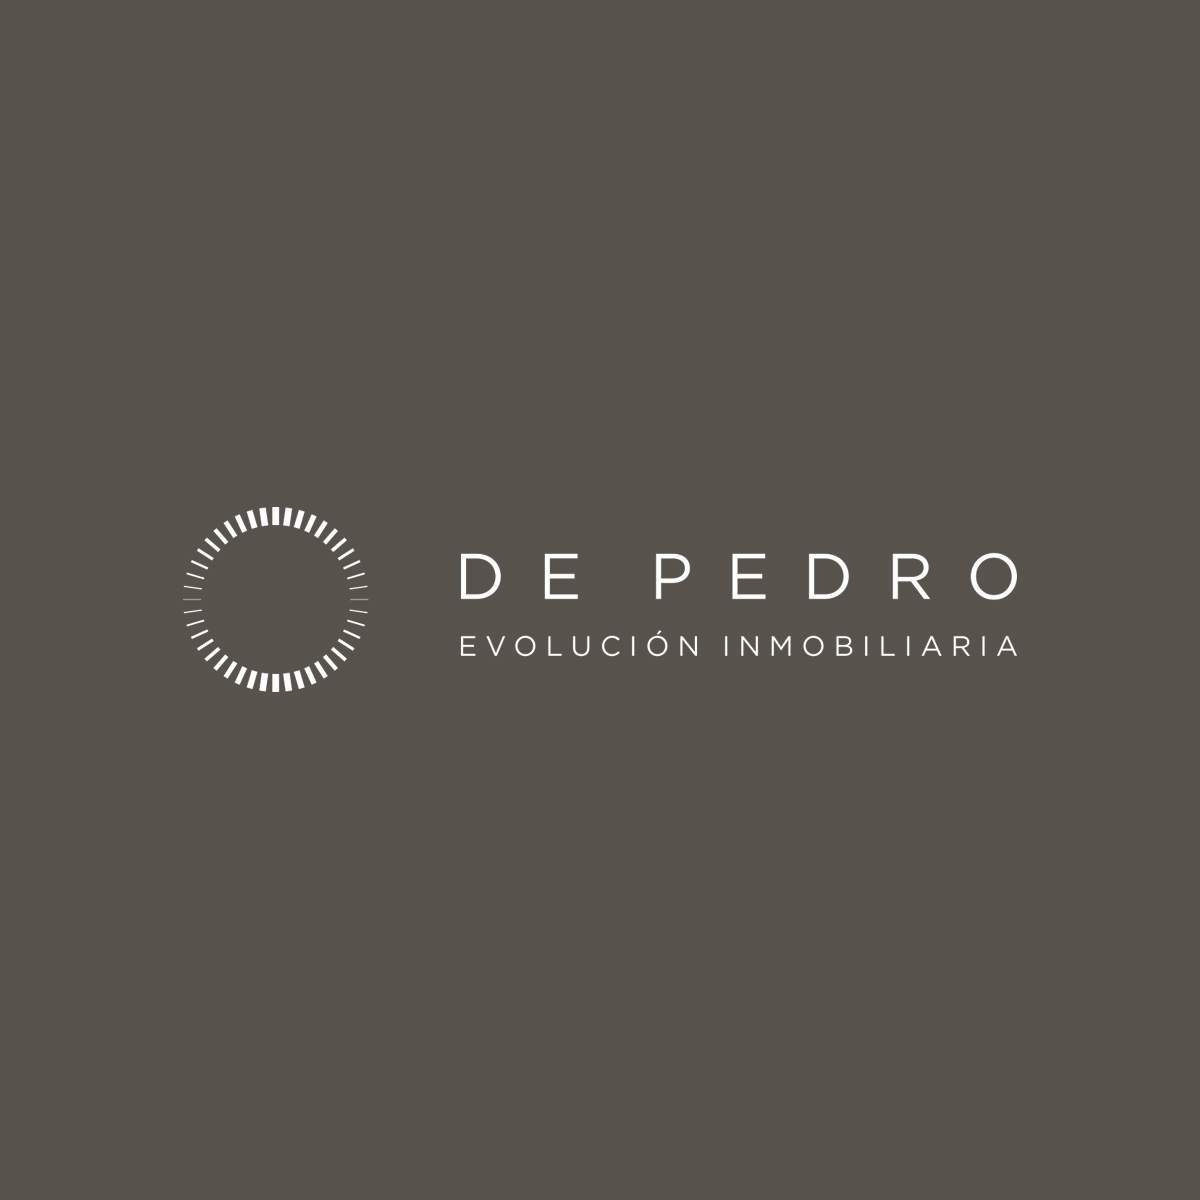 Branding inmobiliario para De Pedro evolución inmobiliaria